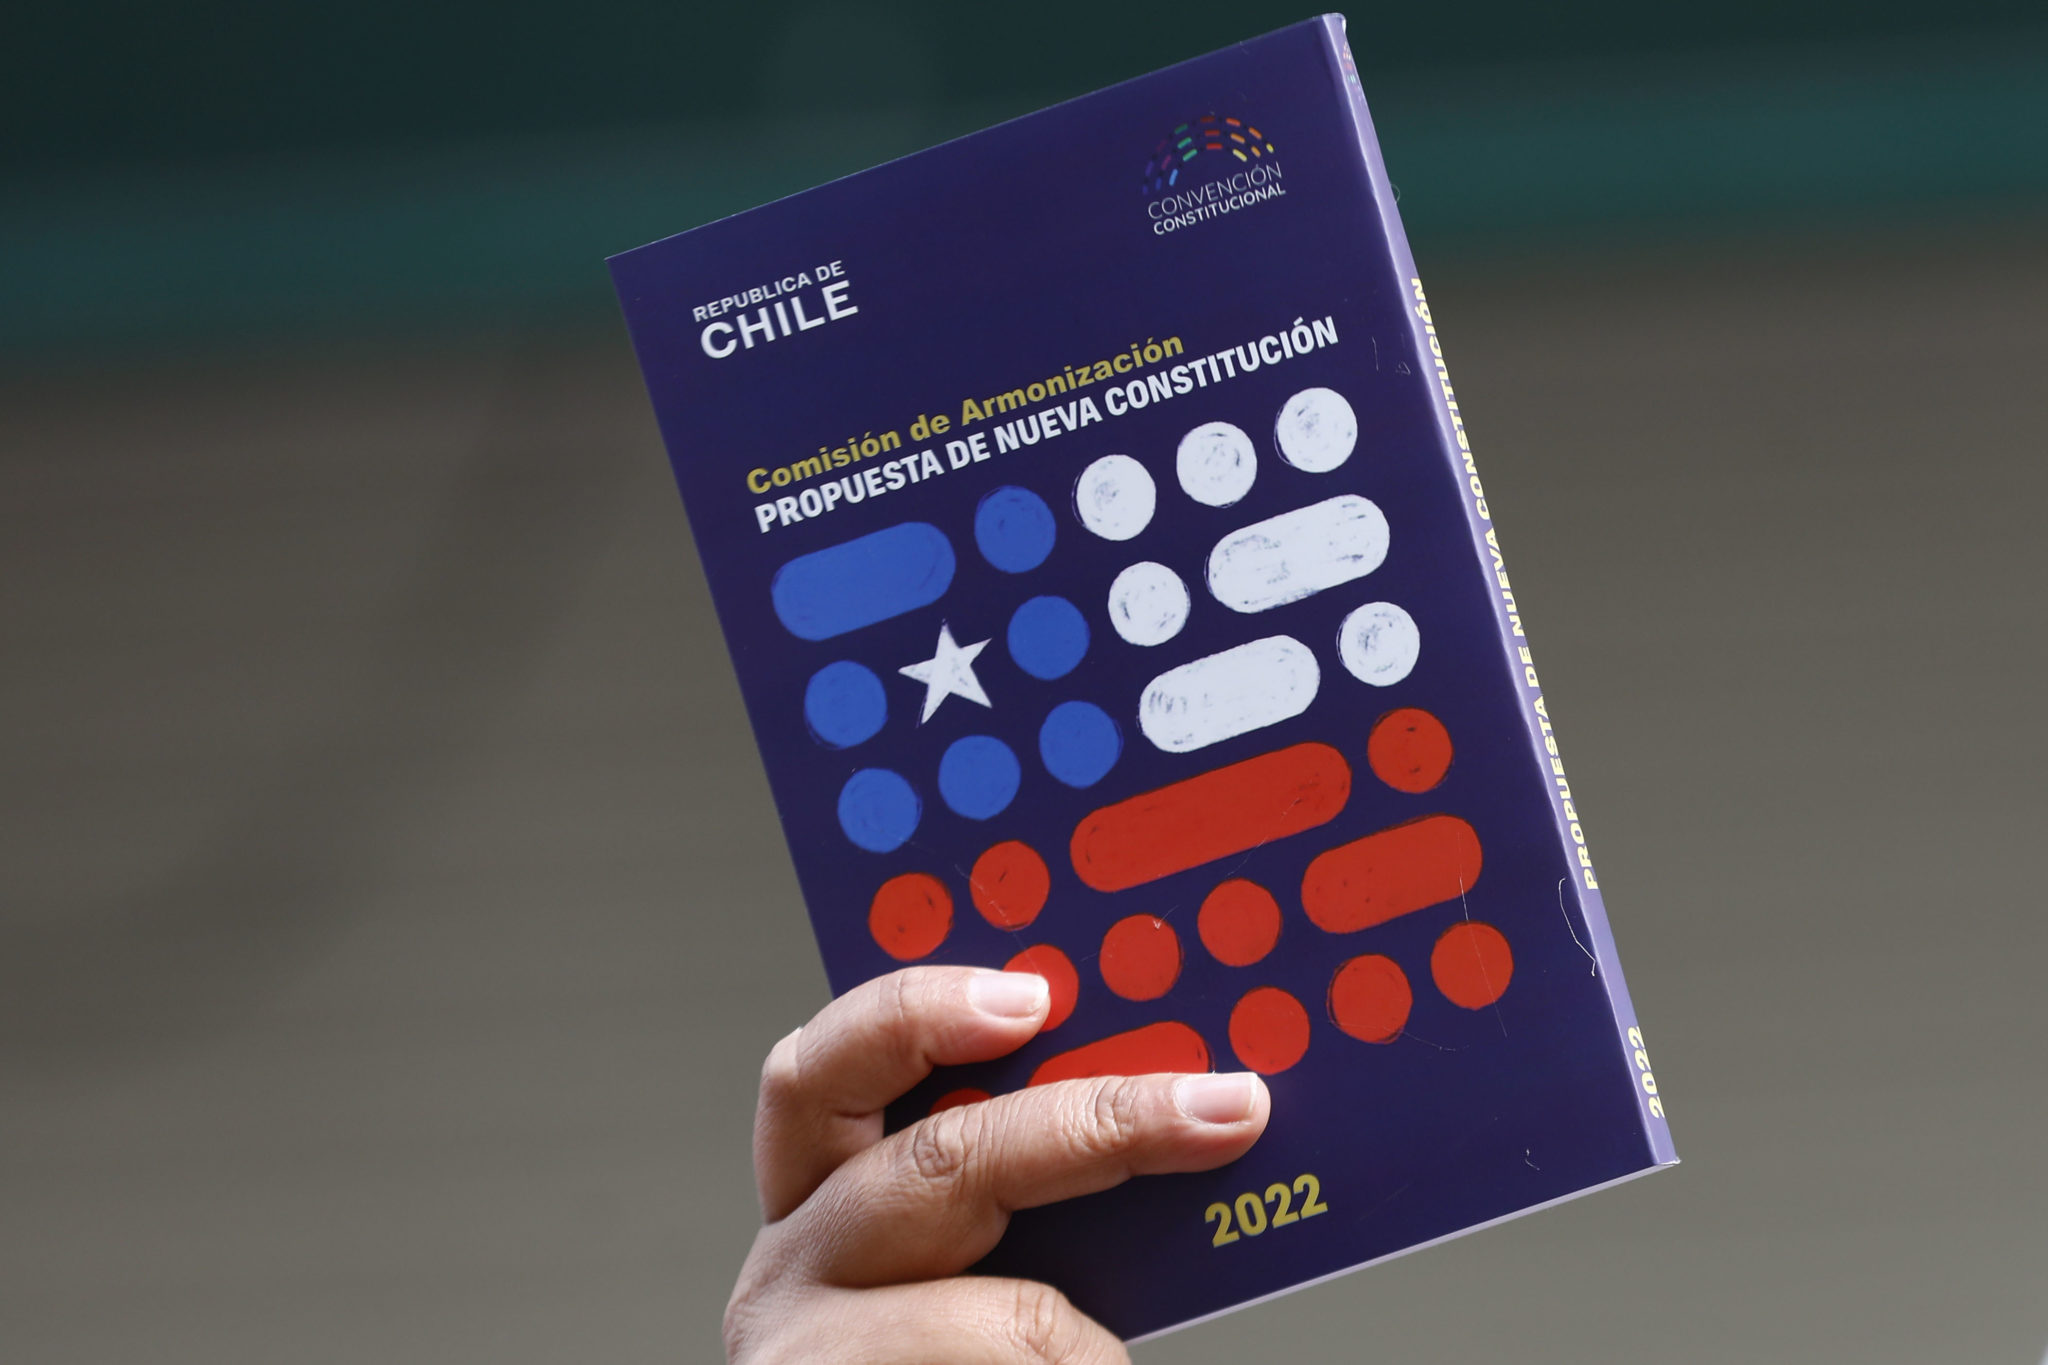 Más de 100 economistas y científicos sociales firman carta de apoyo a la propuesta de nueva Constitución en Chile